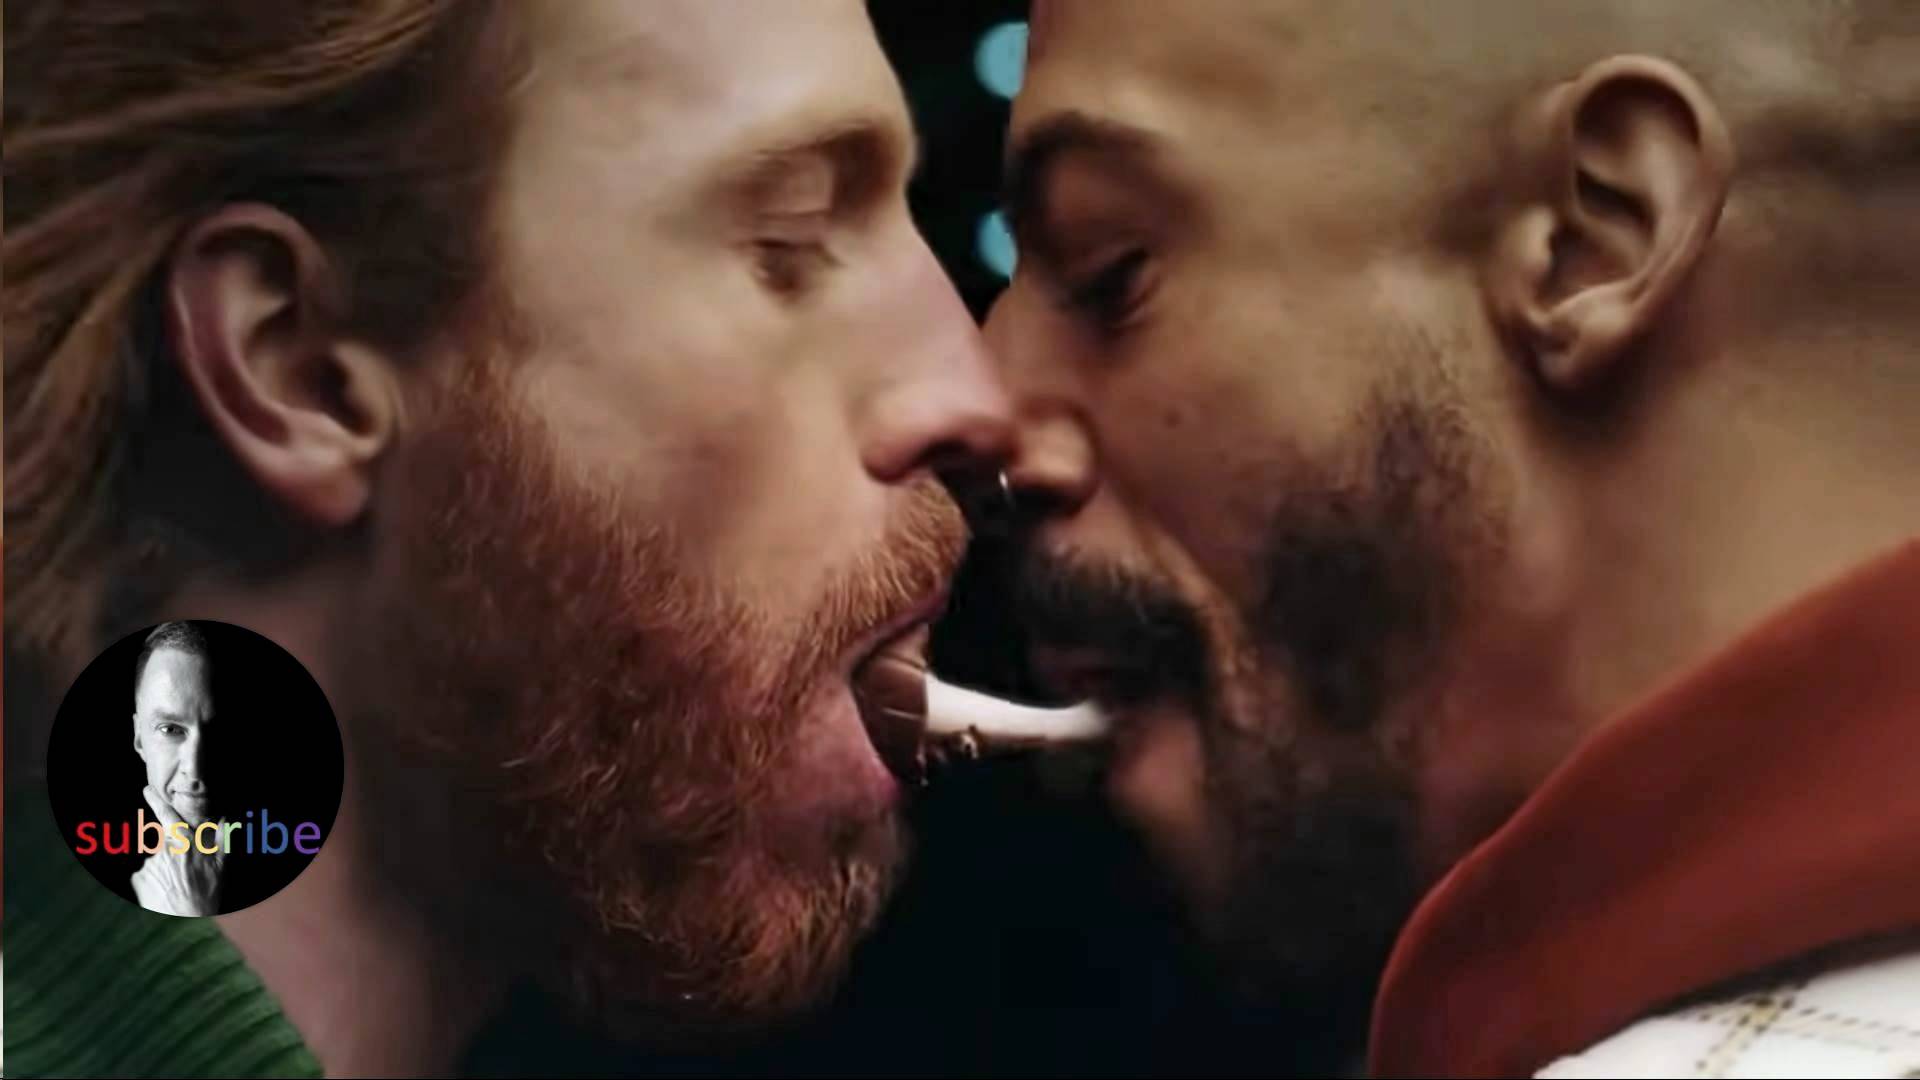 ЛГБТ-образы в коммерческой рекламе